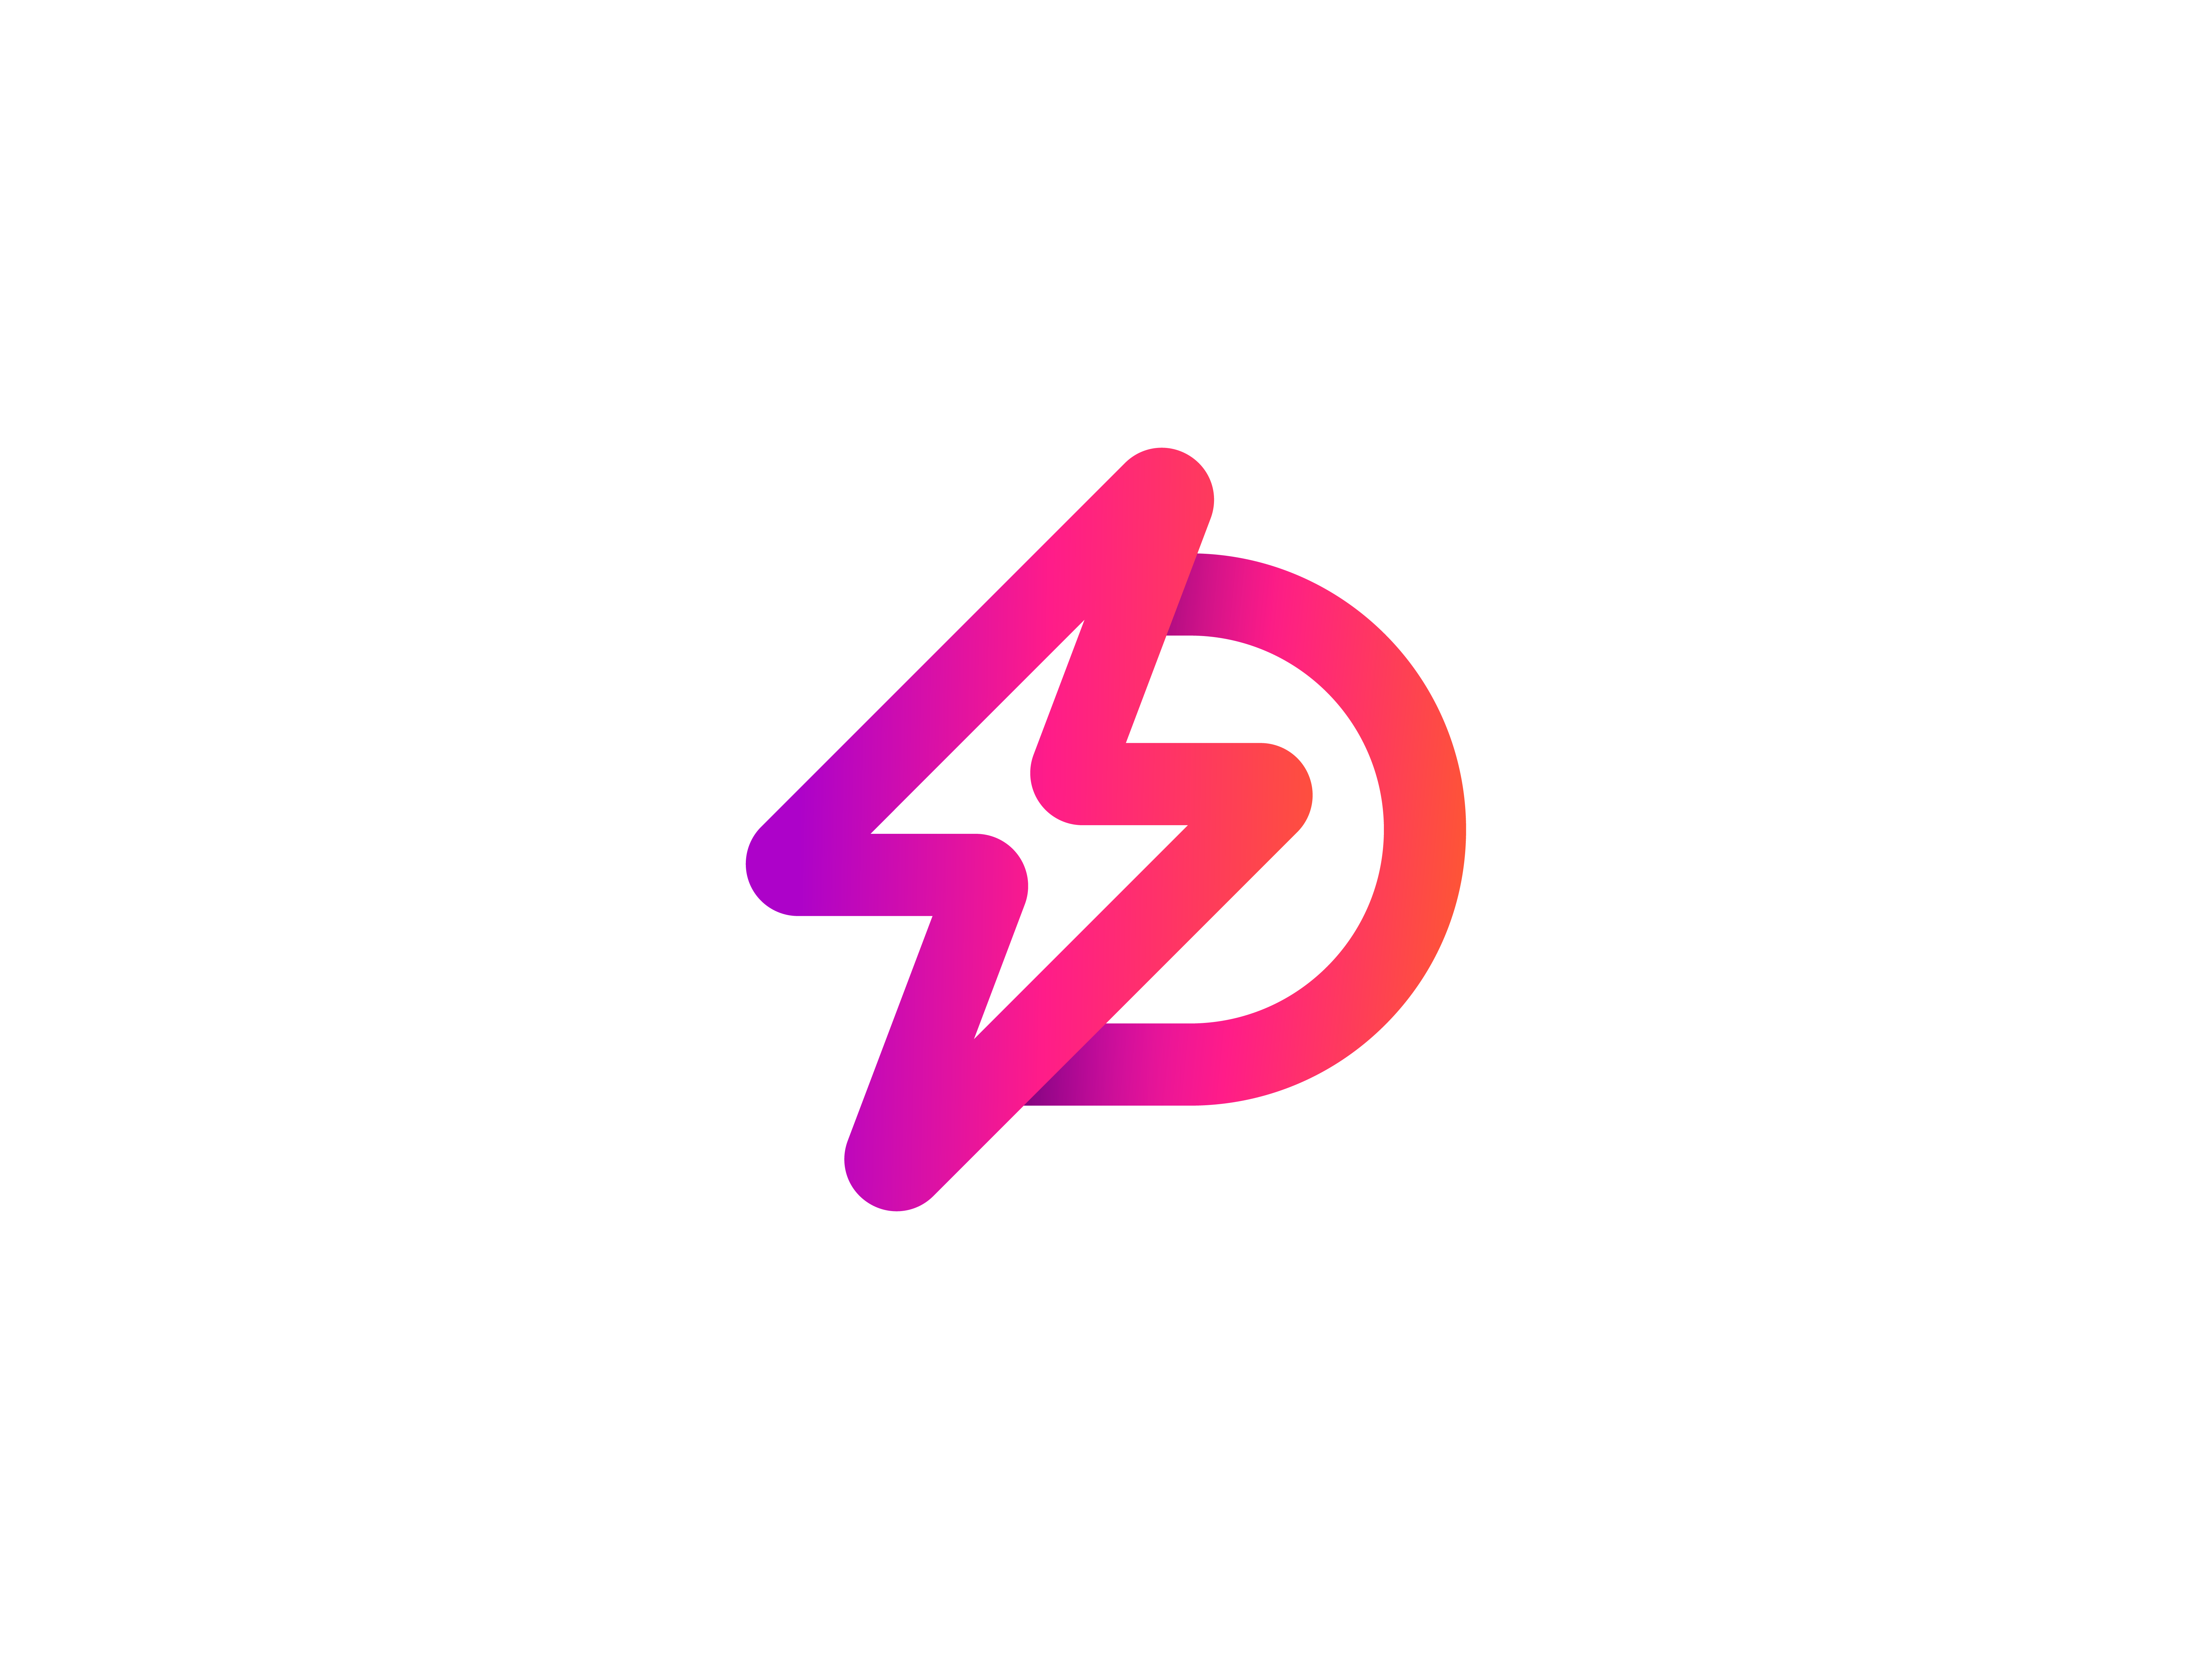 Premium Vector | Spark s logo design vector template